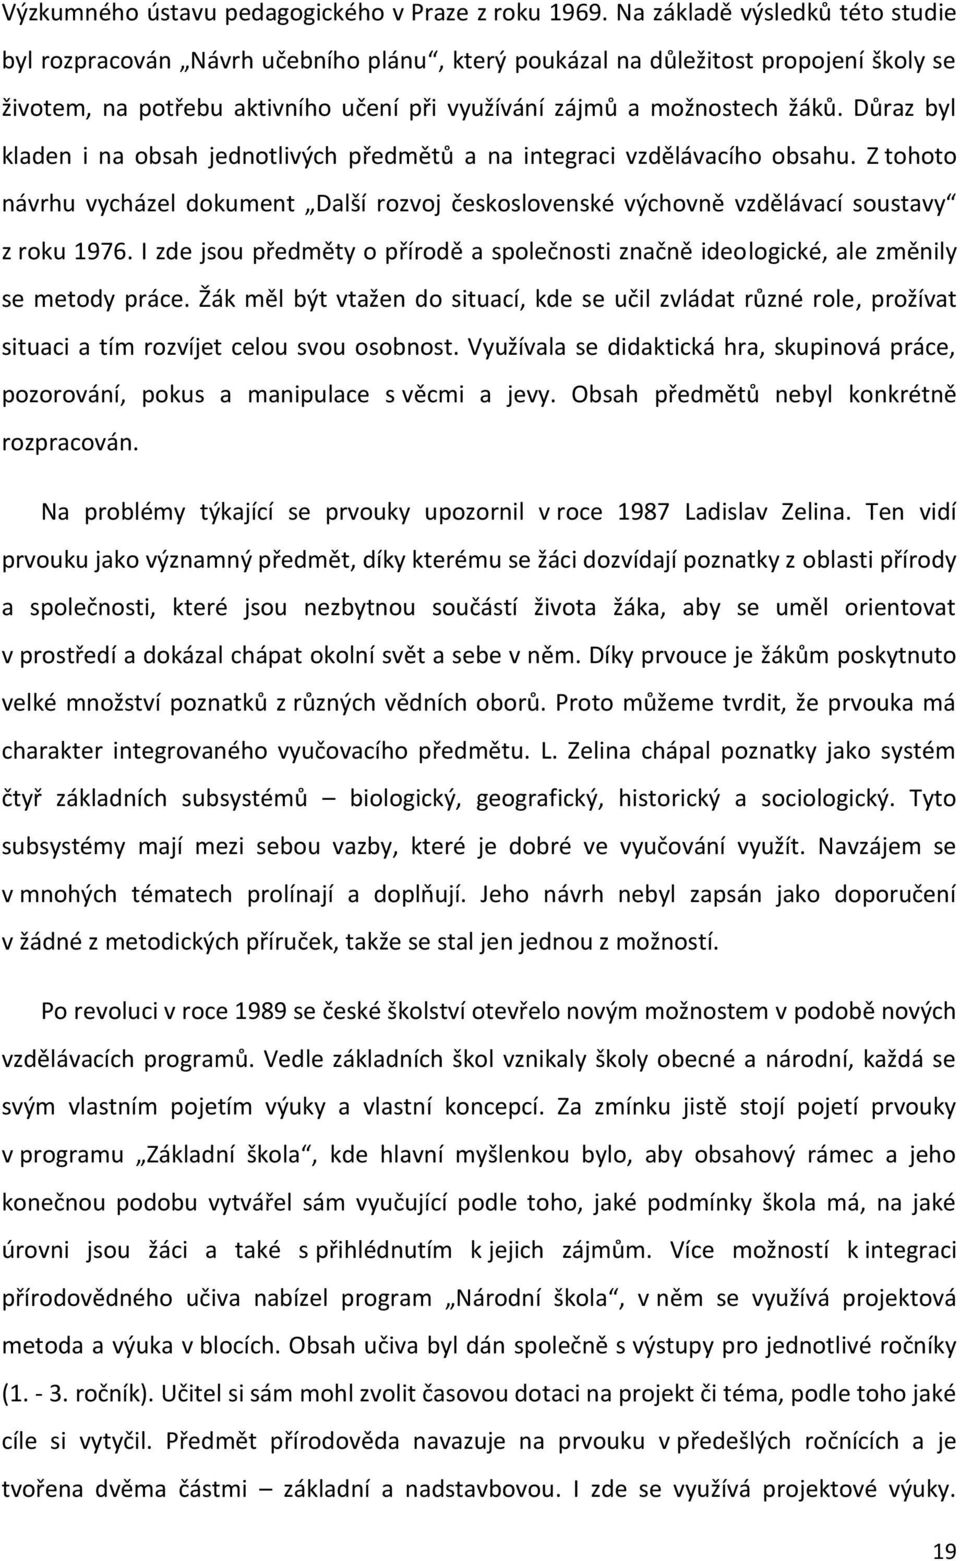 Důraz byl kladen i na obsah jednotlivých předmětů a na integraci vzdělávacího obsahu. Z tohoto návrhu vycházel dokument Další rozvoj československé výchovně vzdělávací soustavy z roku 1976.